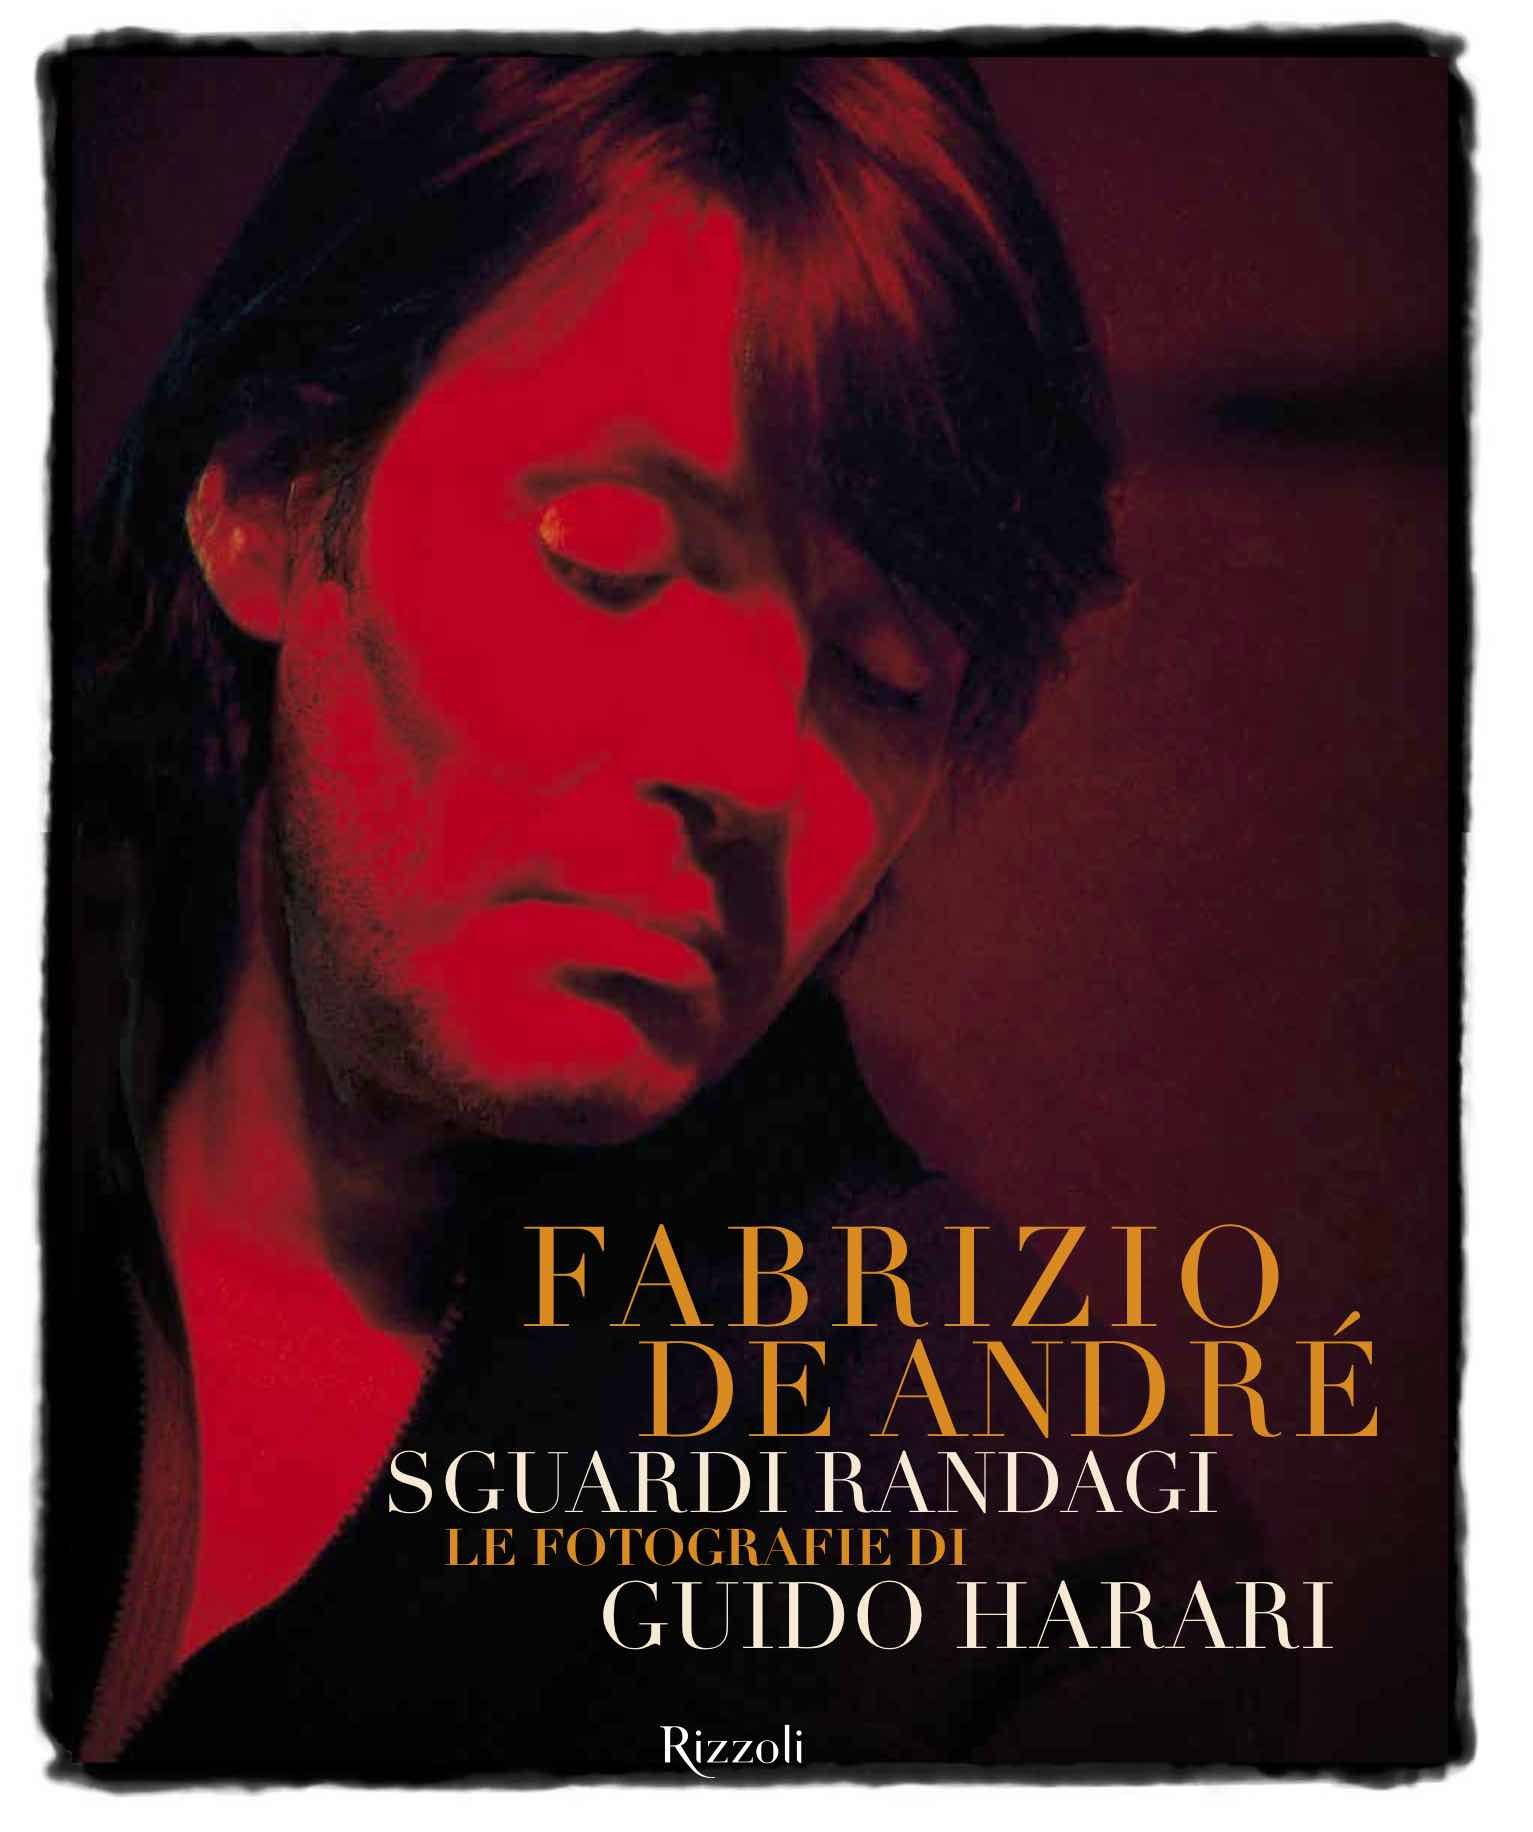 “Fabrizio De Andrè: Sguardi randagi” è il nuovo libro sul cantautore genovese